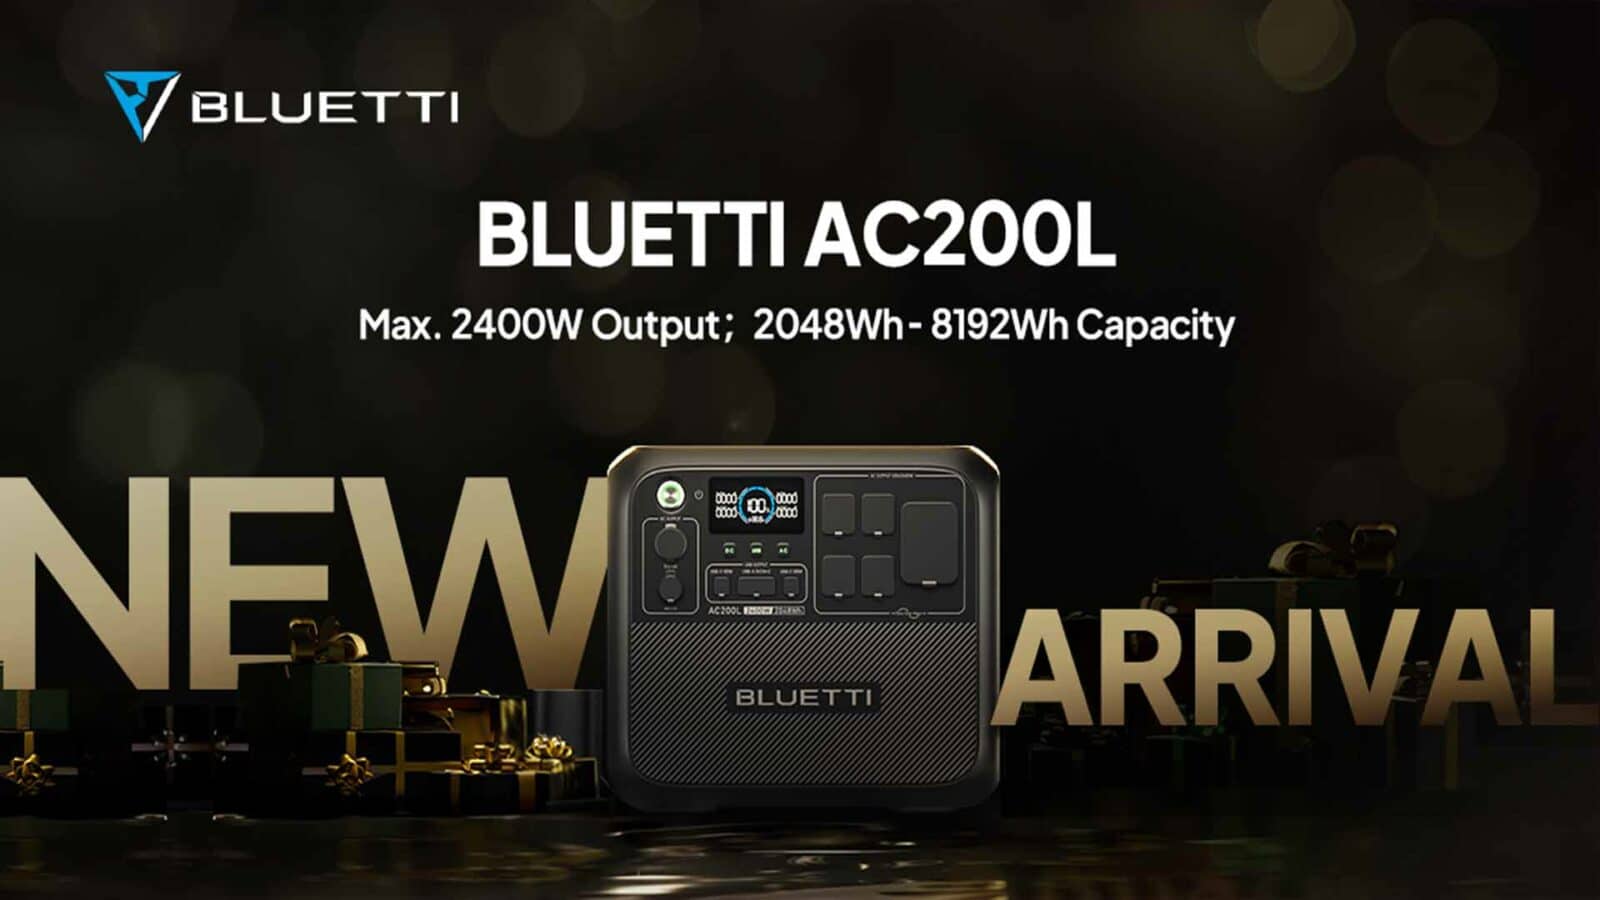 وصل نموذج جديد من bluetti ac200l بأقصى خرج 2400 واط وسعة 8192 واط في الساعة.